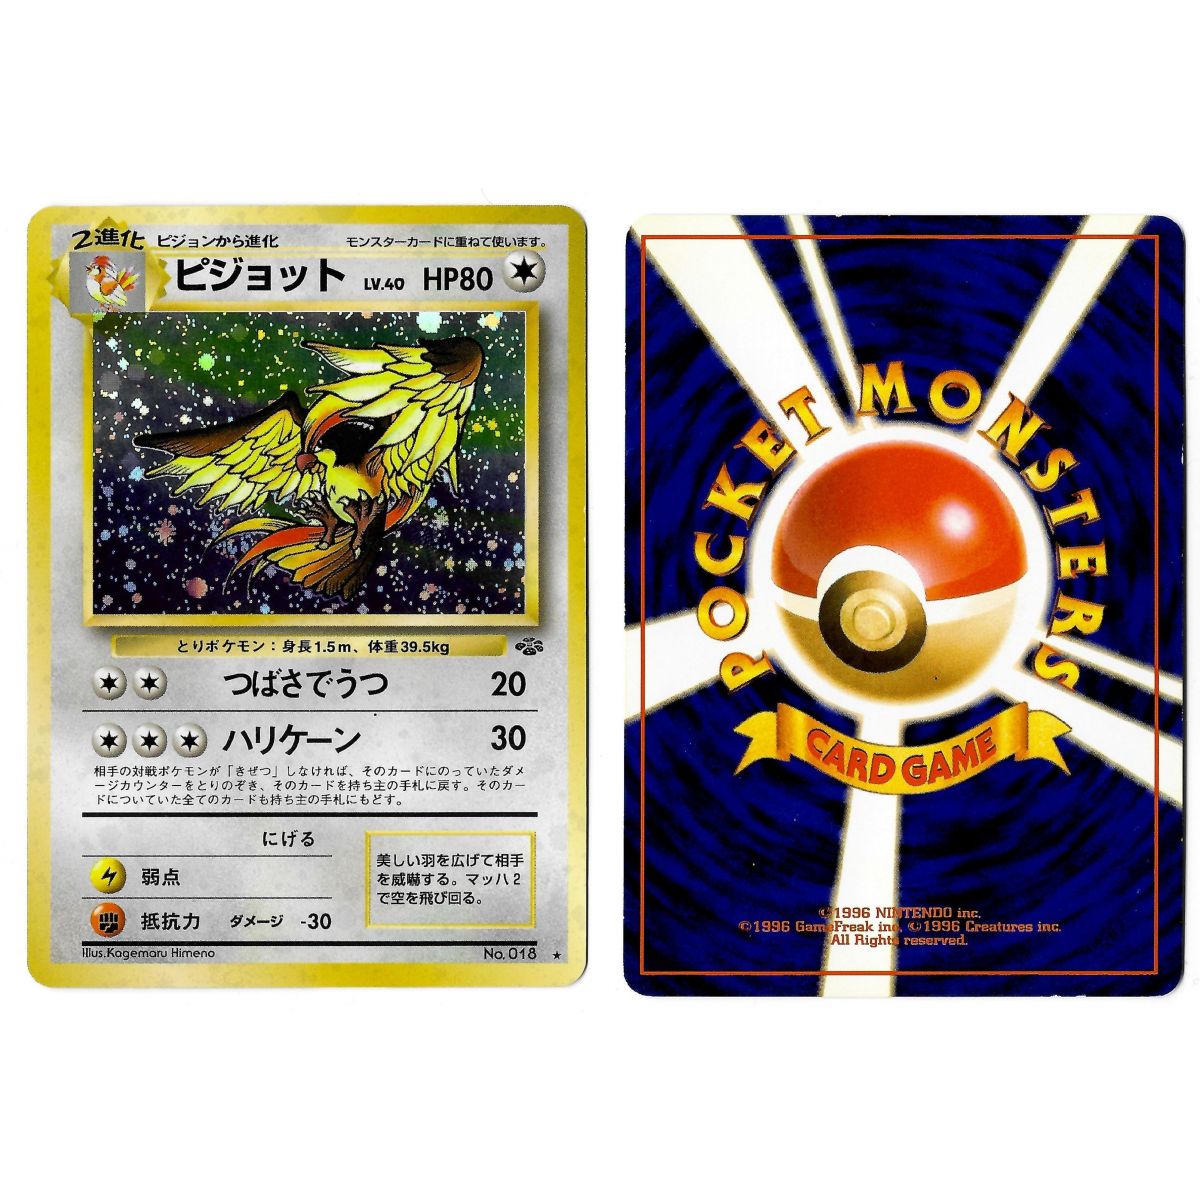 Item Pidgeot (1) No.018 Pokémon Jungle JU Holo Unlimited Japonais Voir Scan